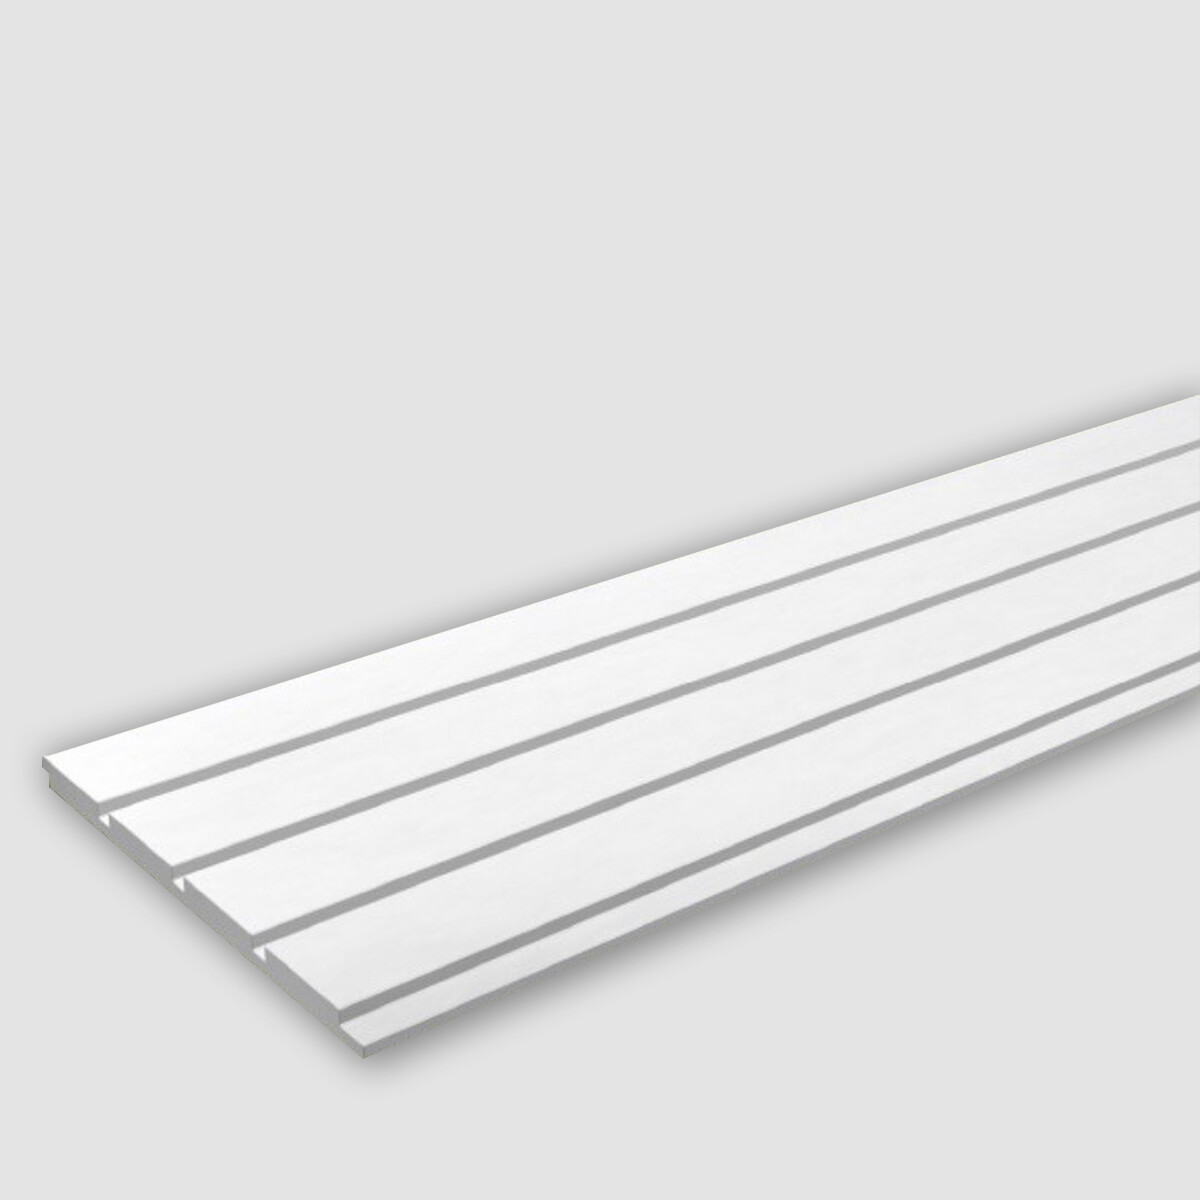 Revestimiento Linea Concept 9-33 en MDF prepintado Blanco 